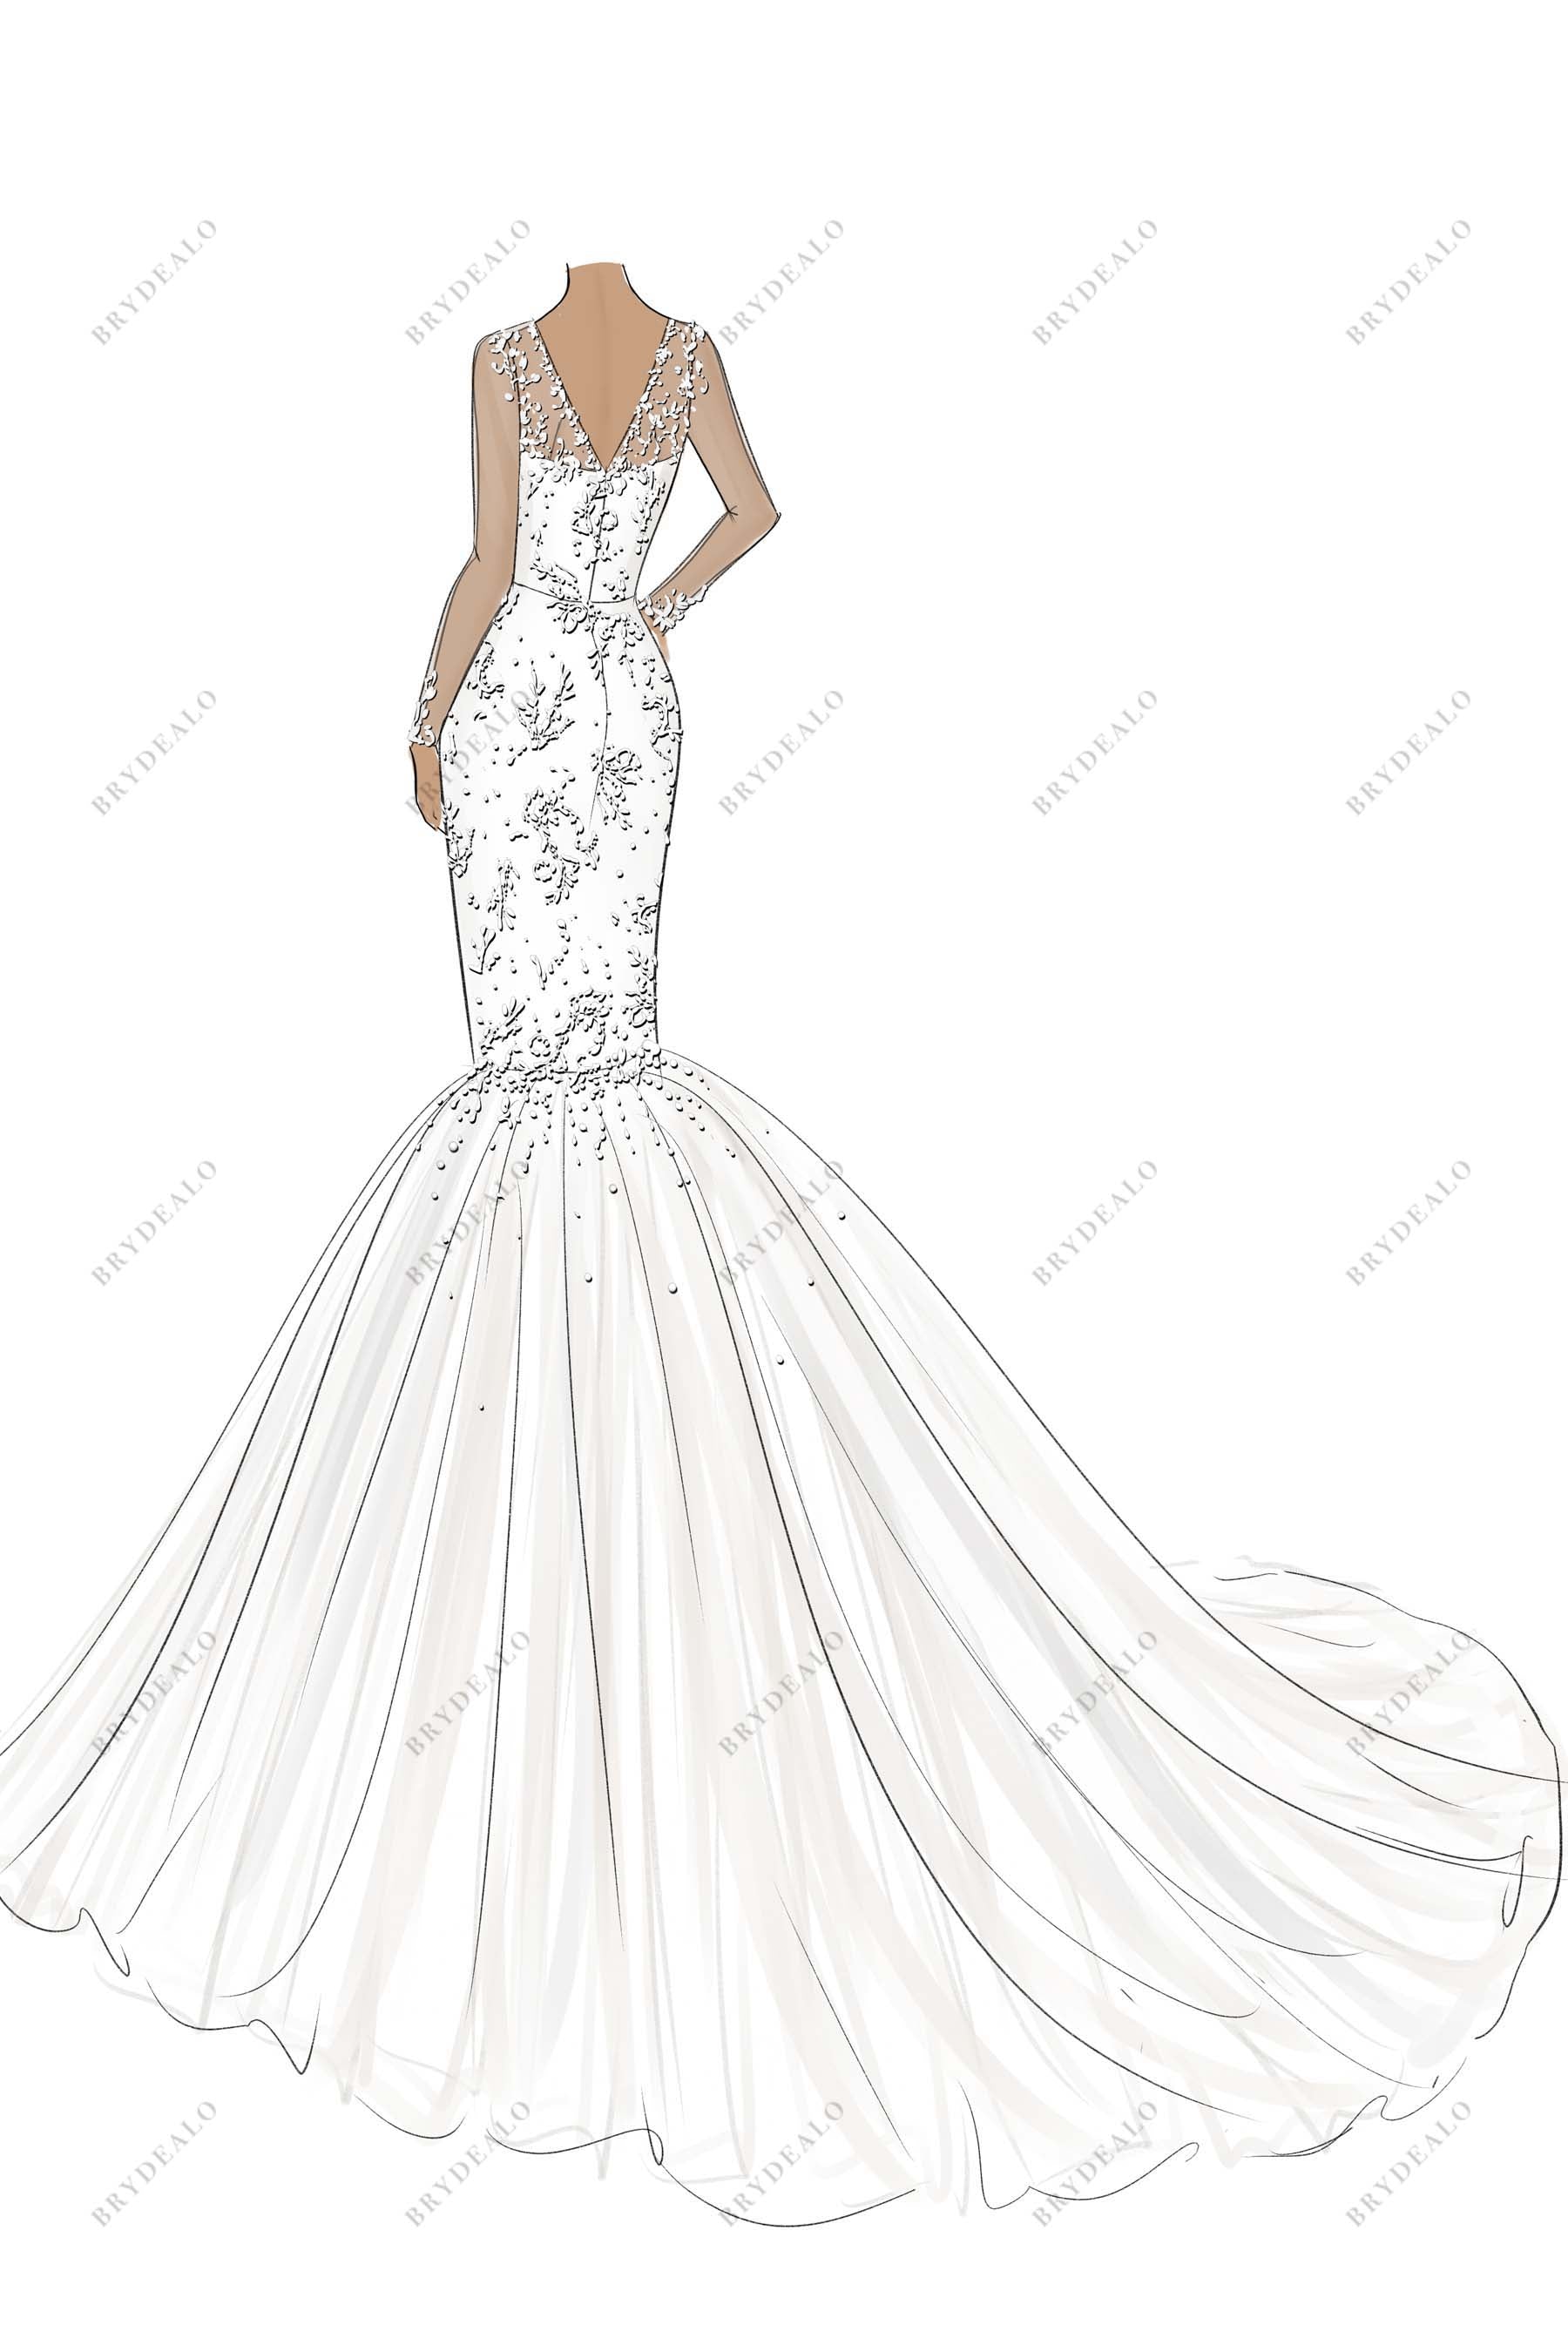 V-back tulle designer trumpet bridal dress sketch